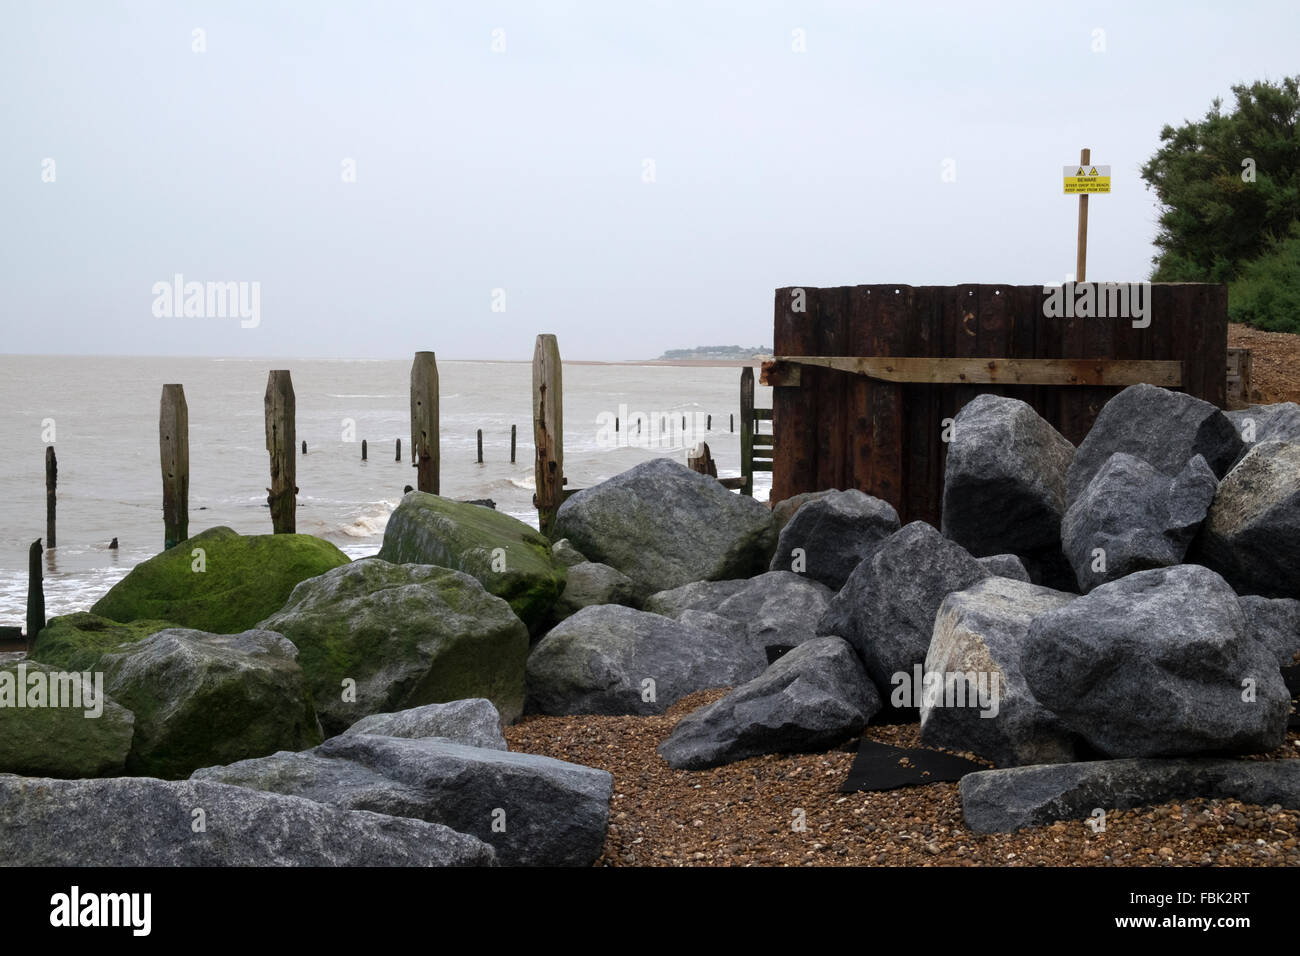 Rock-Rüstung schützt den Deich vor Küsten Erosion, Bawdsey Fähre, Suffolk, UK. Stockfoto